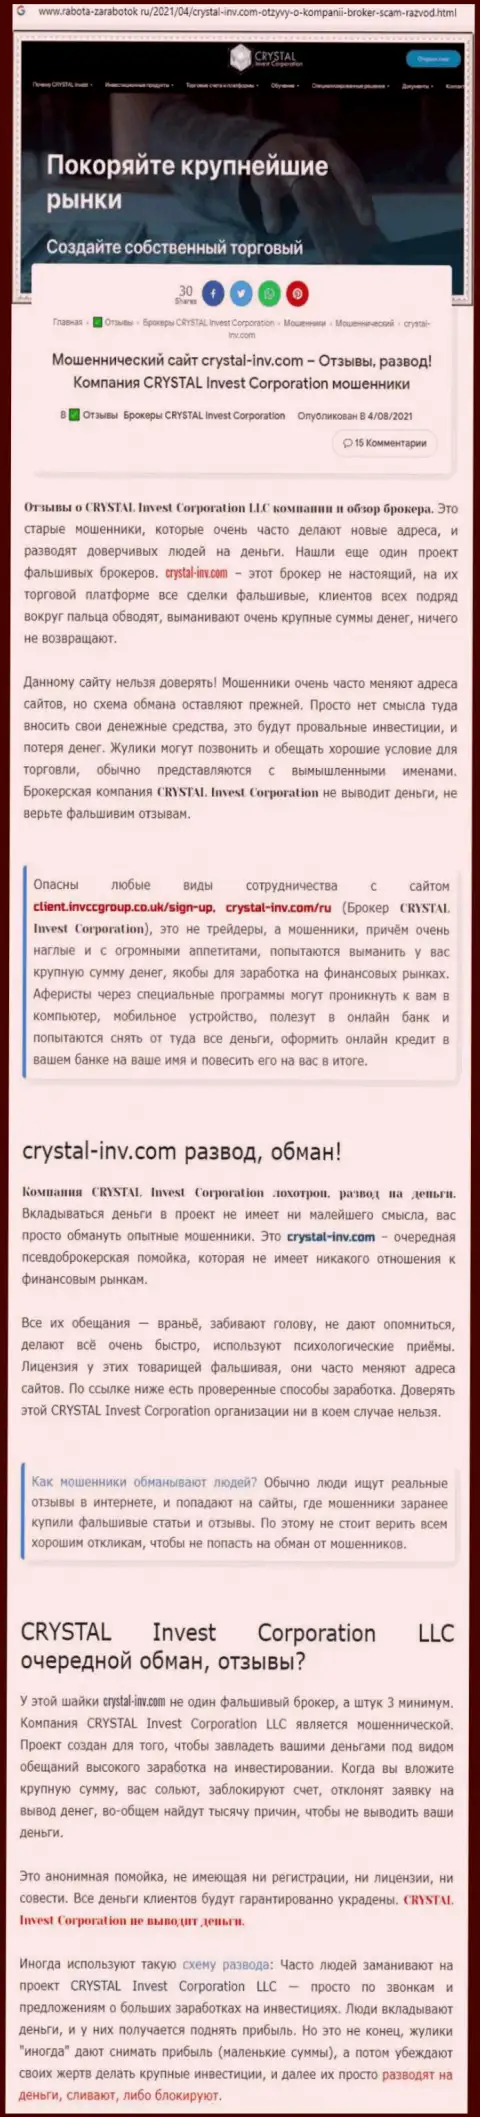 Материал, разоблачающий организацию Crystal Invest, позаимствованный с сайта с обзорами манипуляций разных организаций